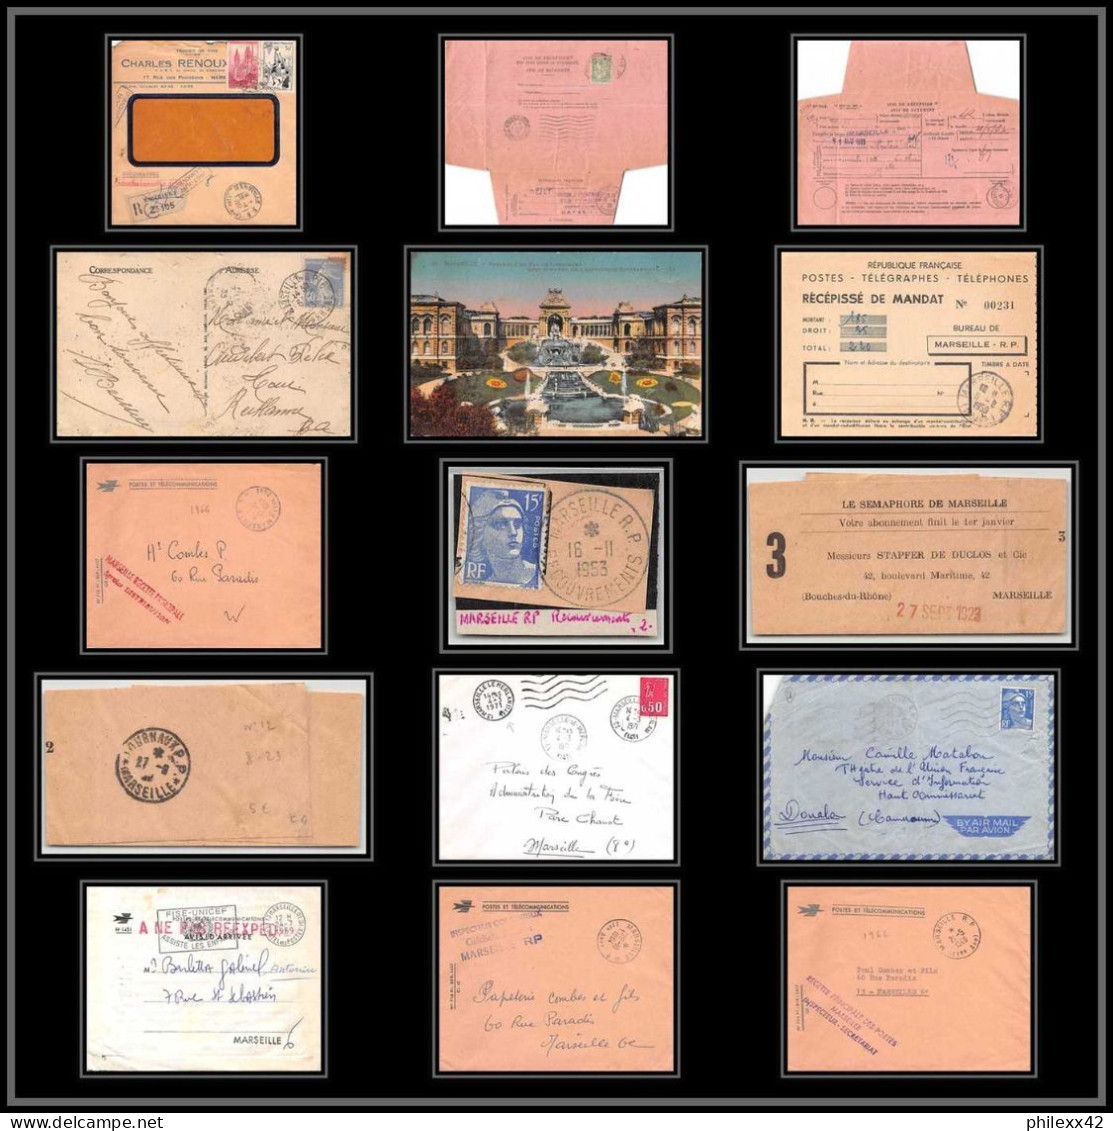 115488 Lot De 11 Lettres Cover Carte Postale (postcard) Avis De Reception Bouches Du Rhone Marseille RP 16 - Collections